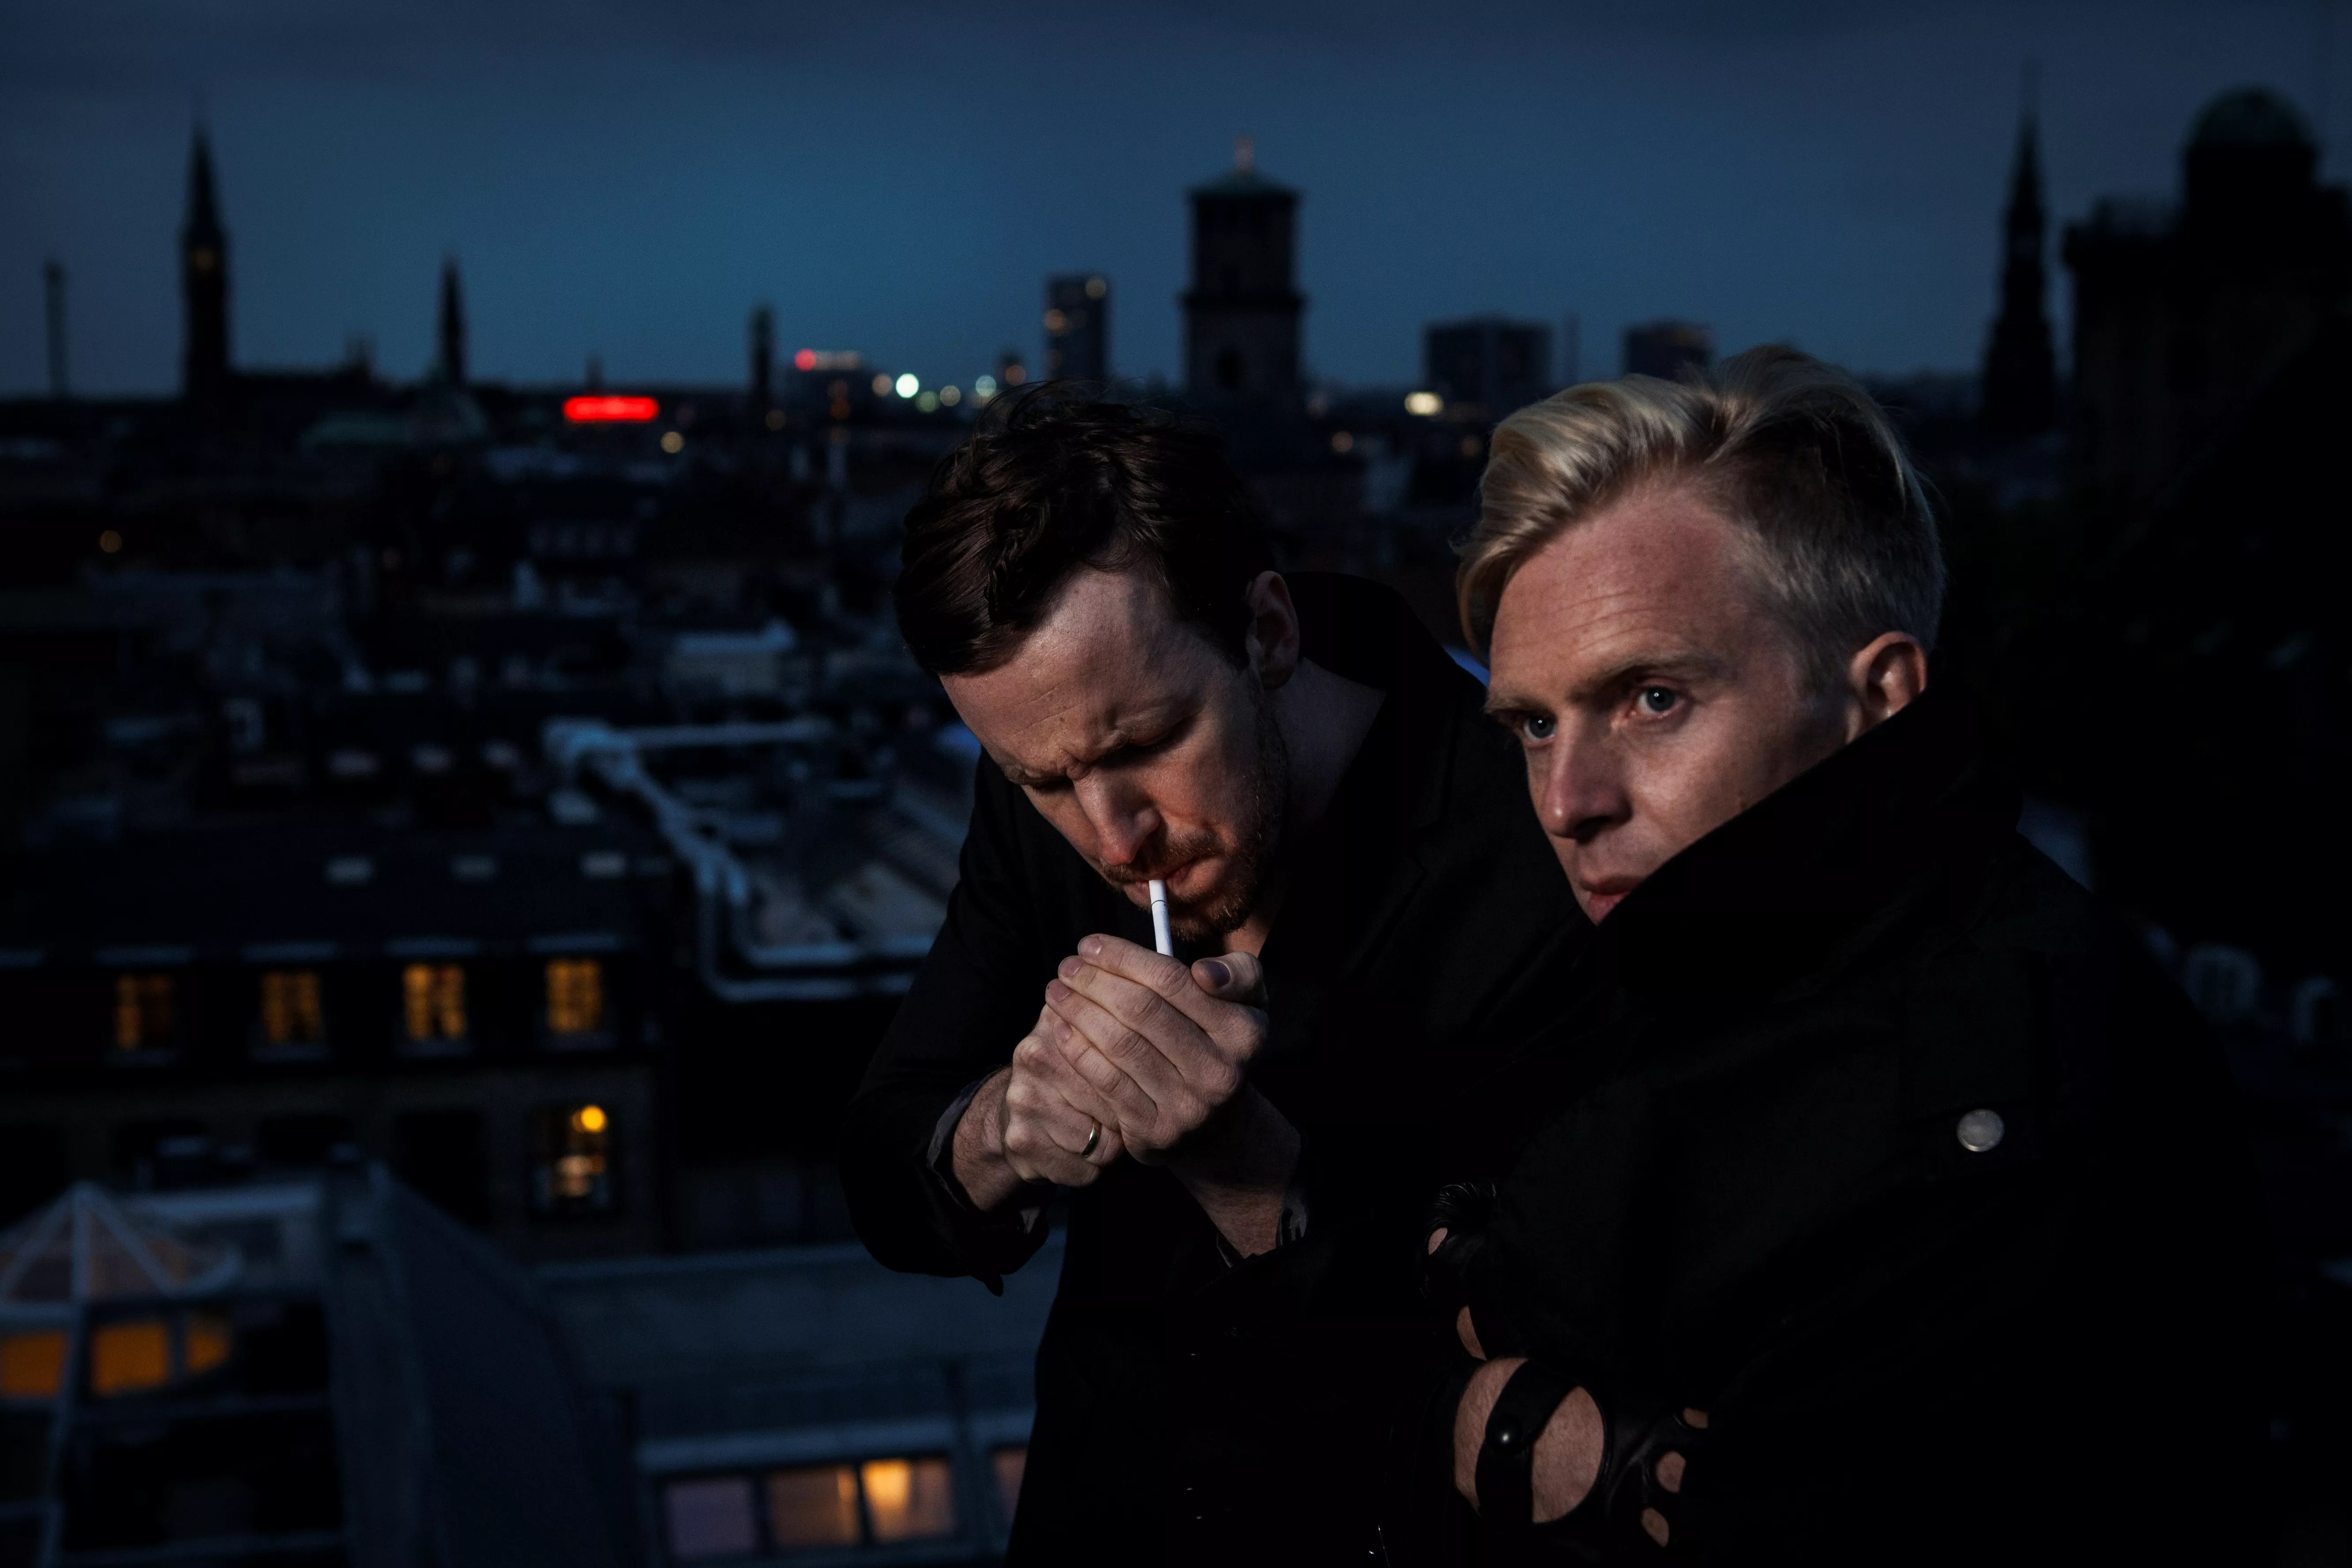 Helsinki Poetry klar med ny musikvideo